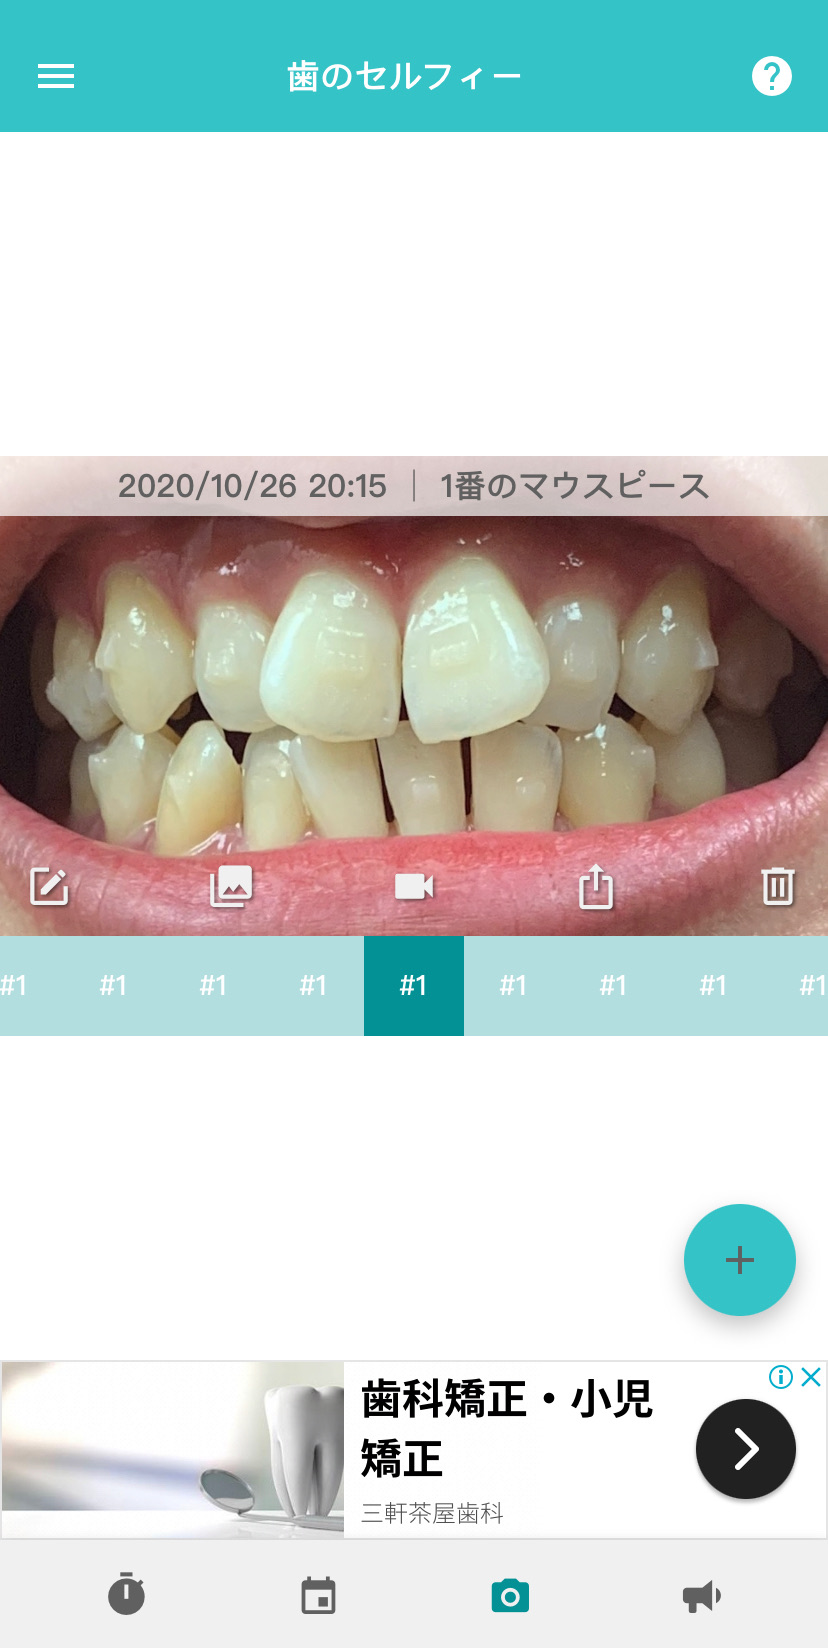 【無料】インビザライン歯科矯正用アプリ"TrayMinder"の使い方を解説【スマホ、Apple Watch版】